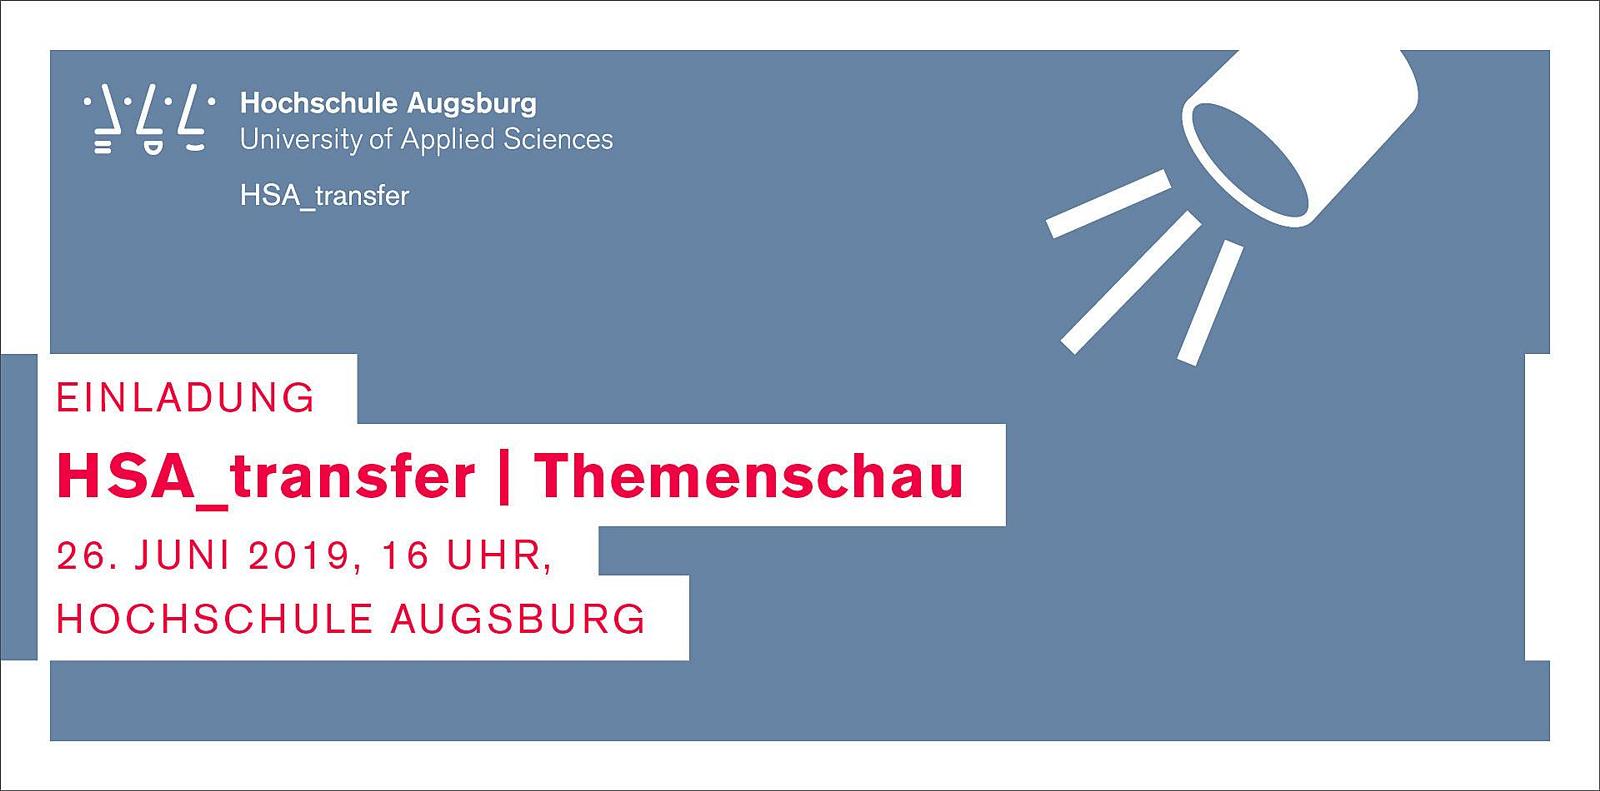 Die Hochschule Augsburg engagiert sich mit Kooperationspartnern für wichtige Zukunftsthemen in der Stadt Augsburg und der Region Bayerisch-Schwaben. Die HSA_transfer | Themenschau zeigt eine Auswahl dieser Projekte „mit gesellschaftlichem Mehrwert“. 